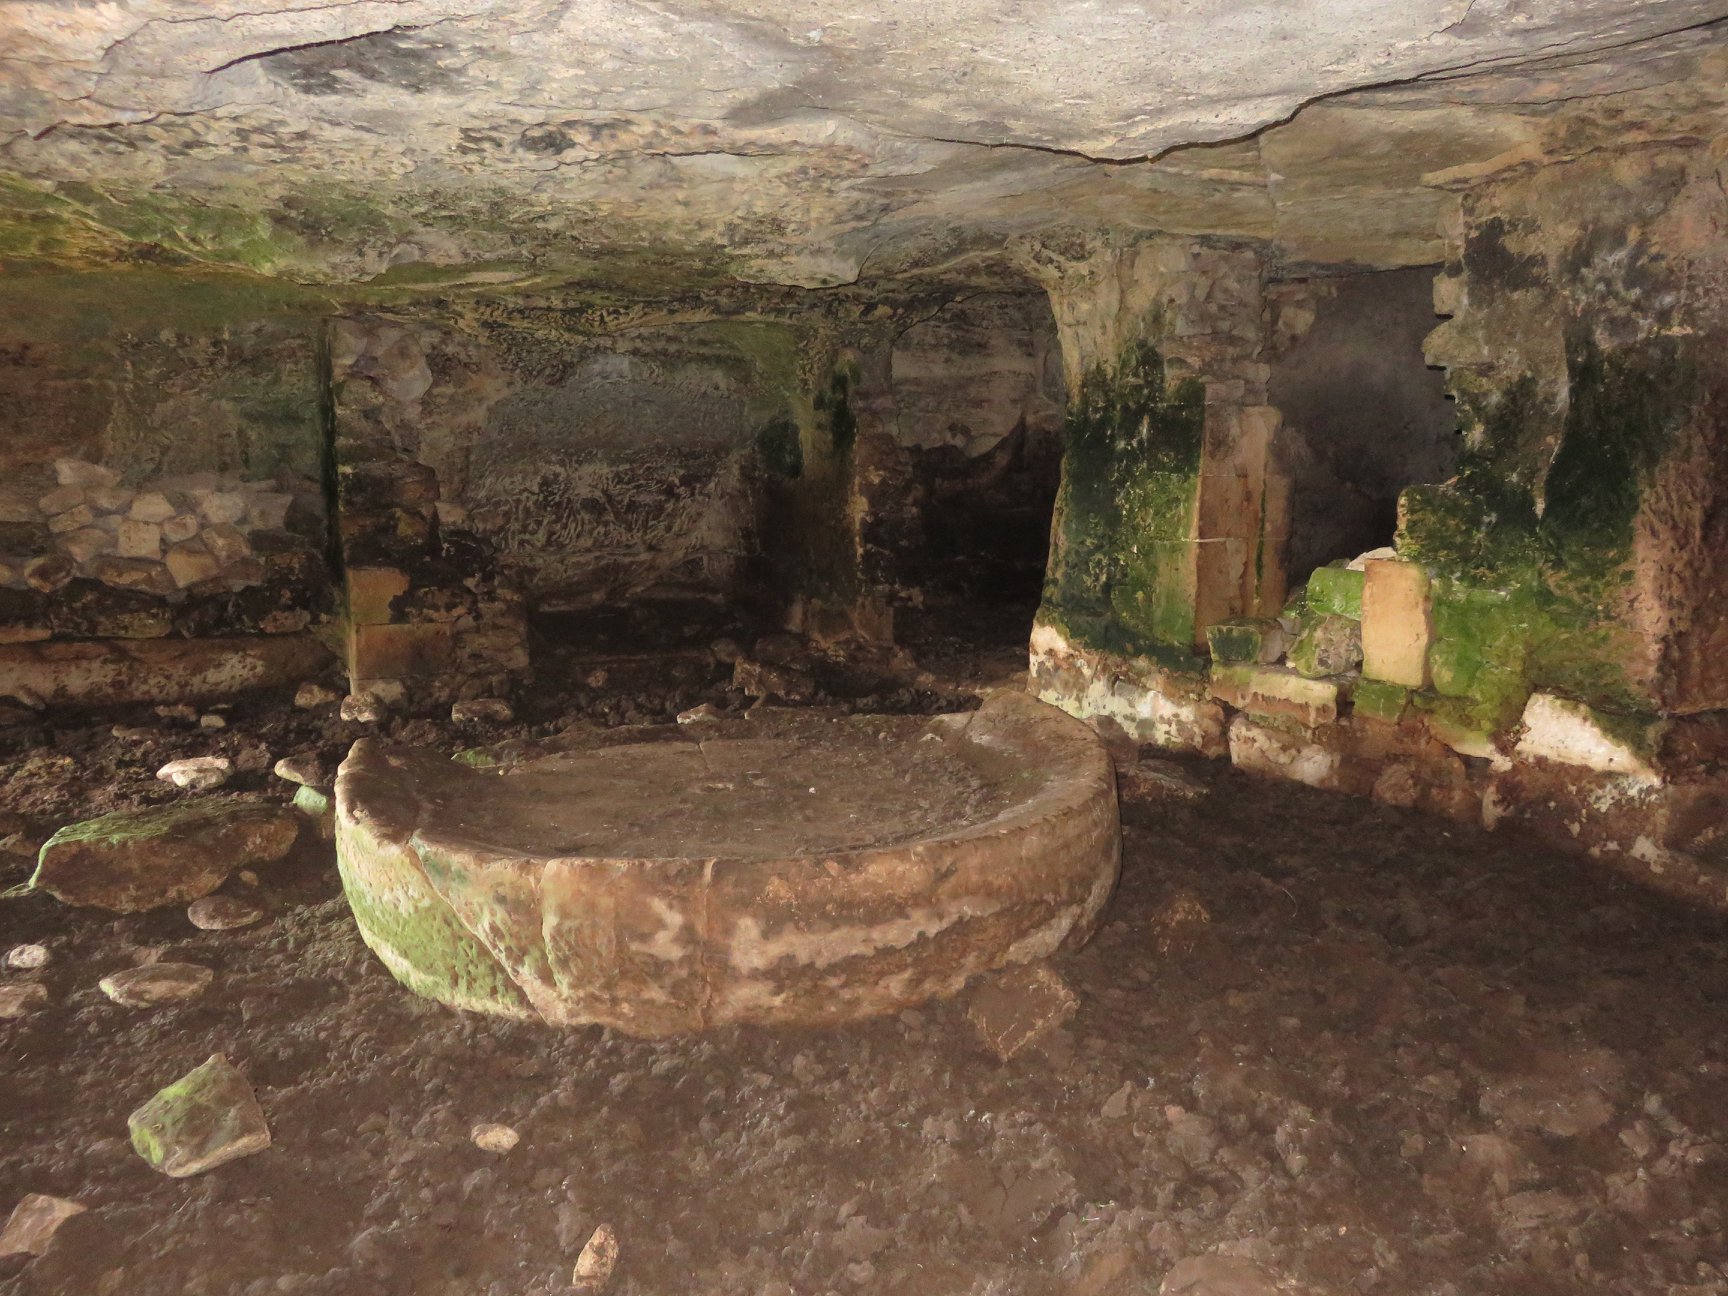 Catacombe cava Palombieri-Numero visite:20243